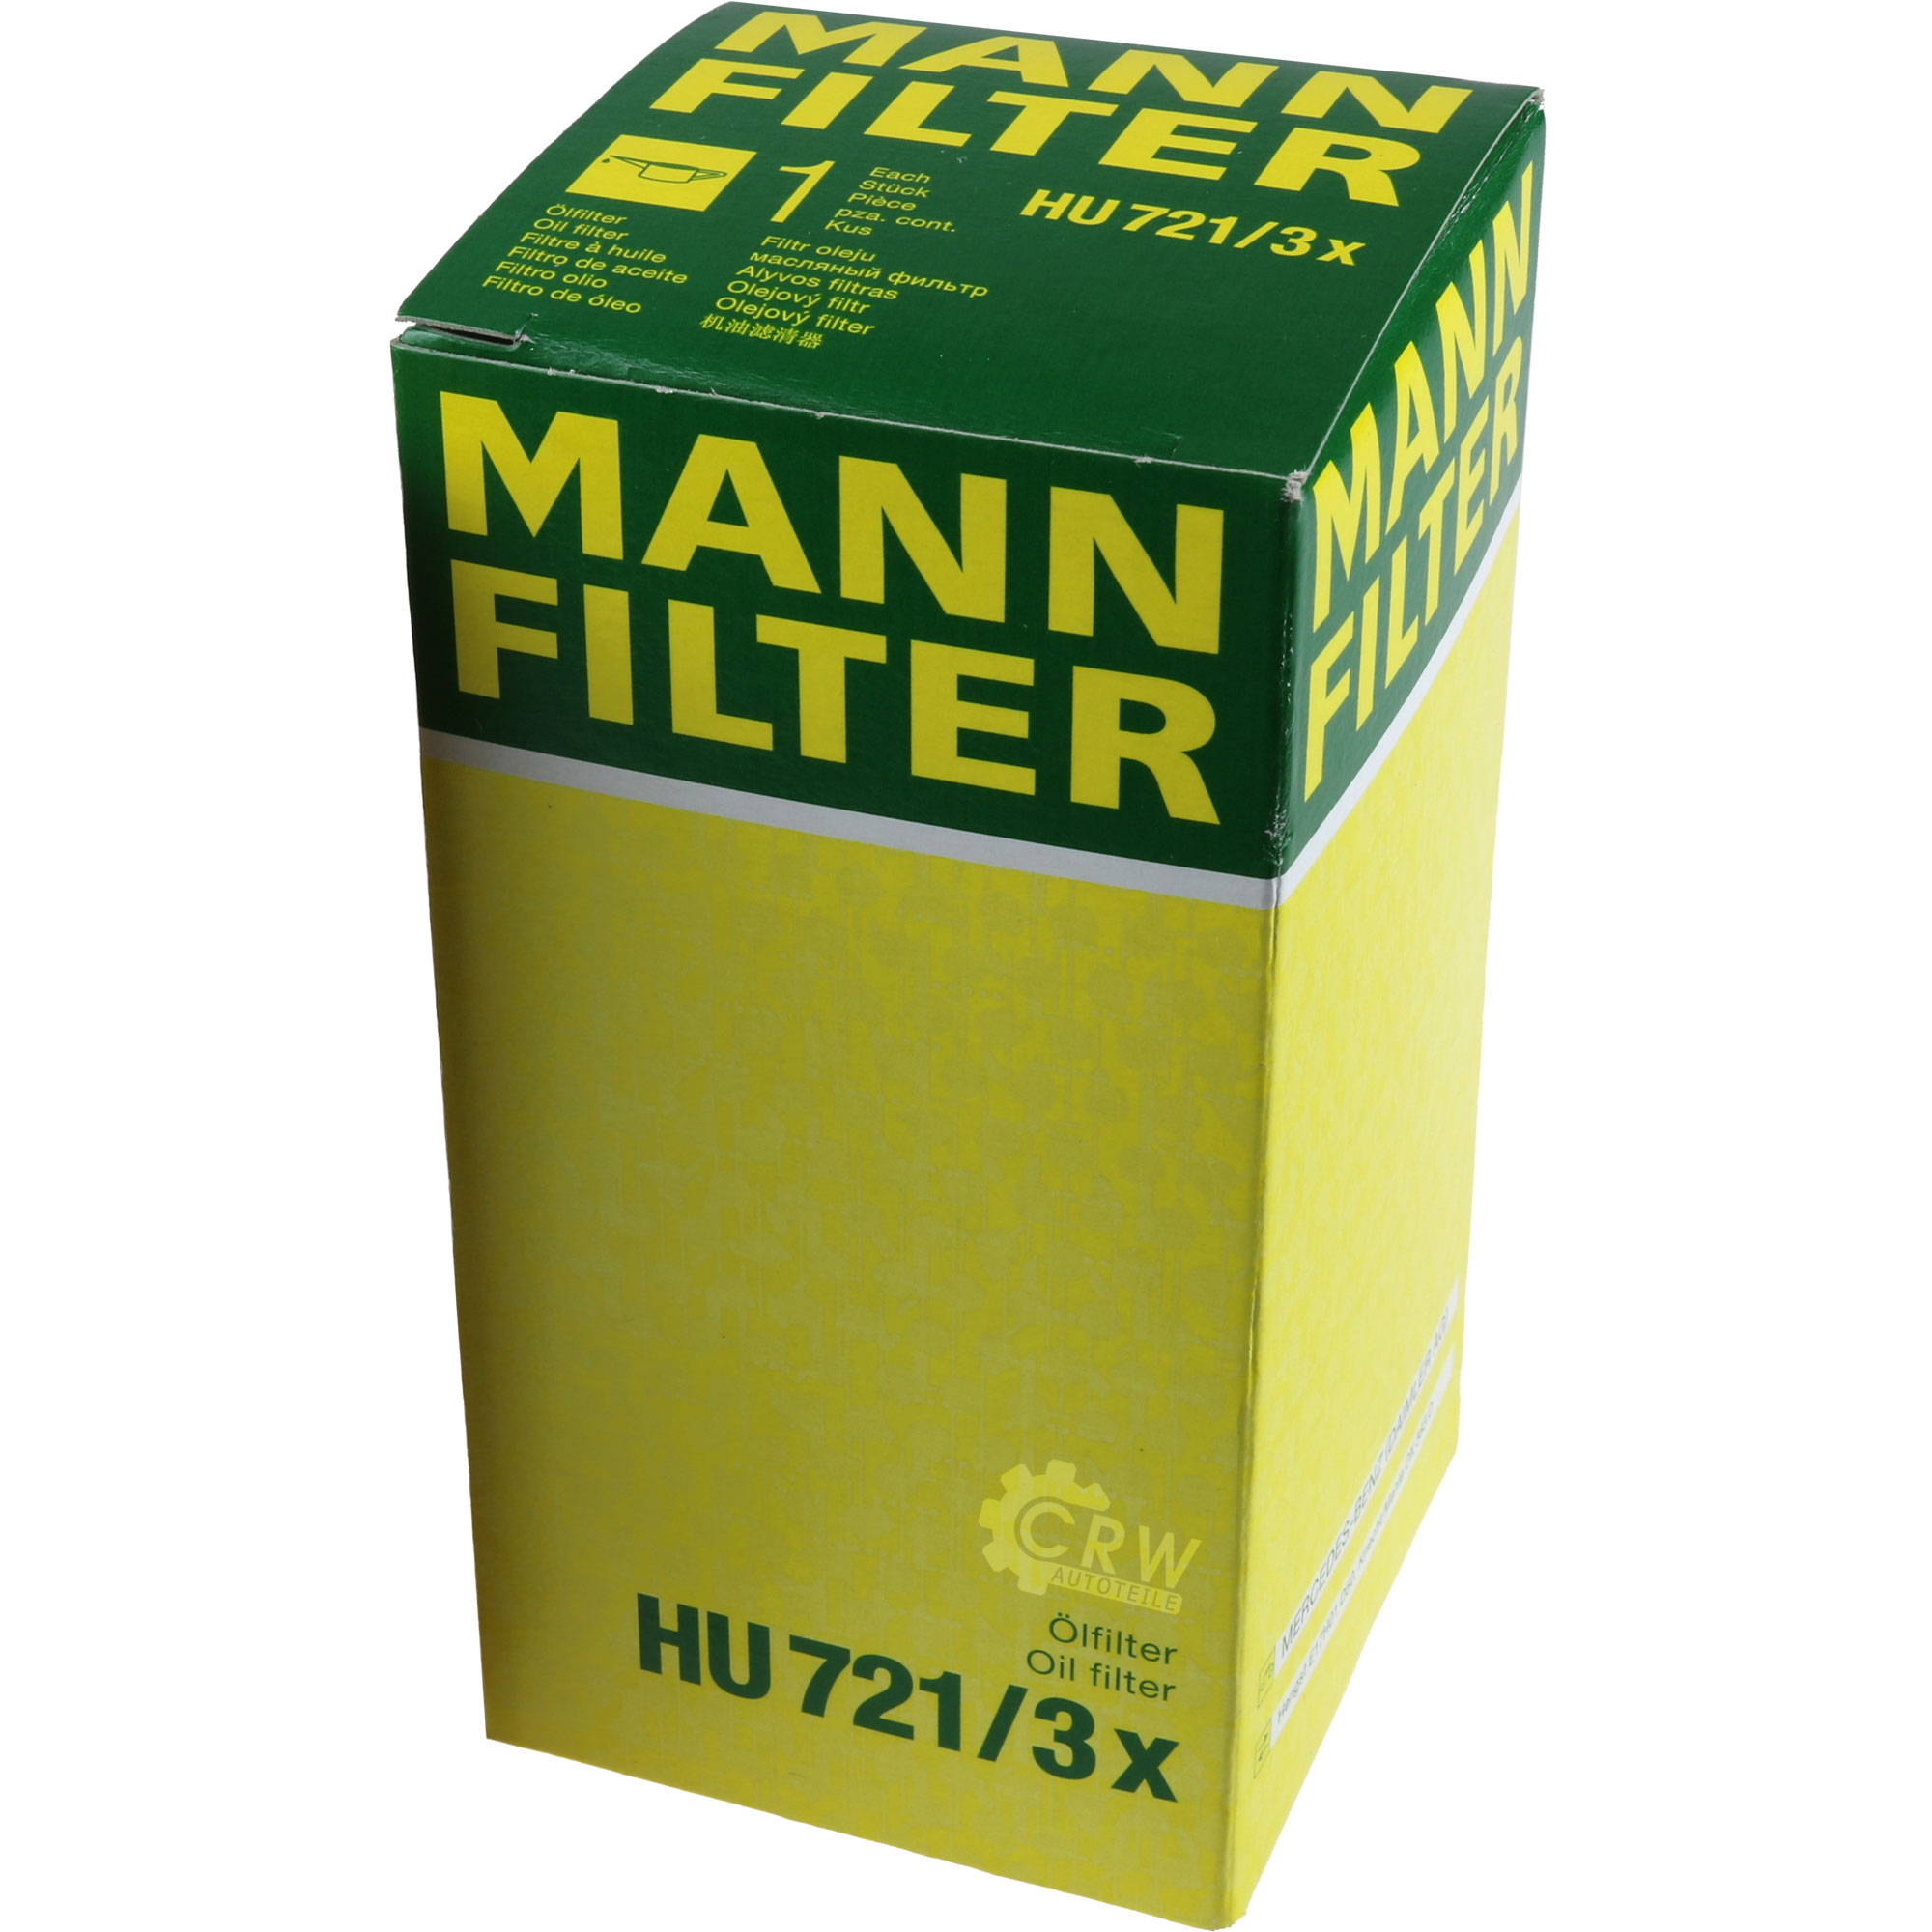 MANN-FILTER Ölfilter HU 721/3 x Oil Filter